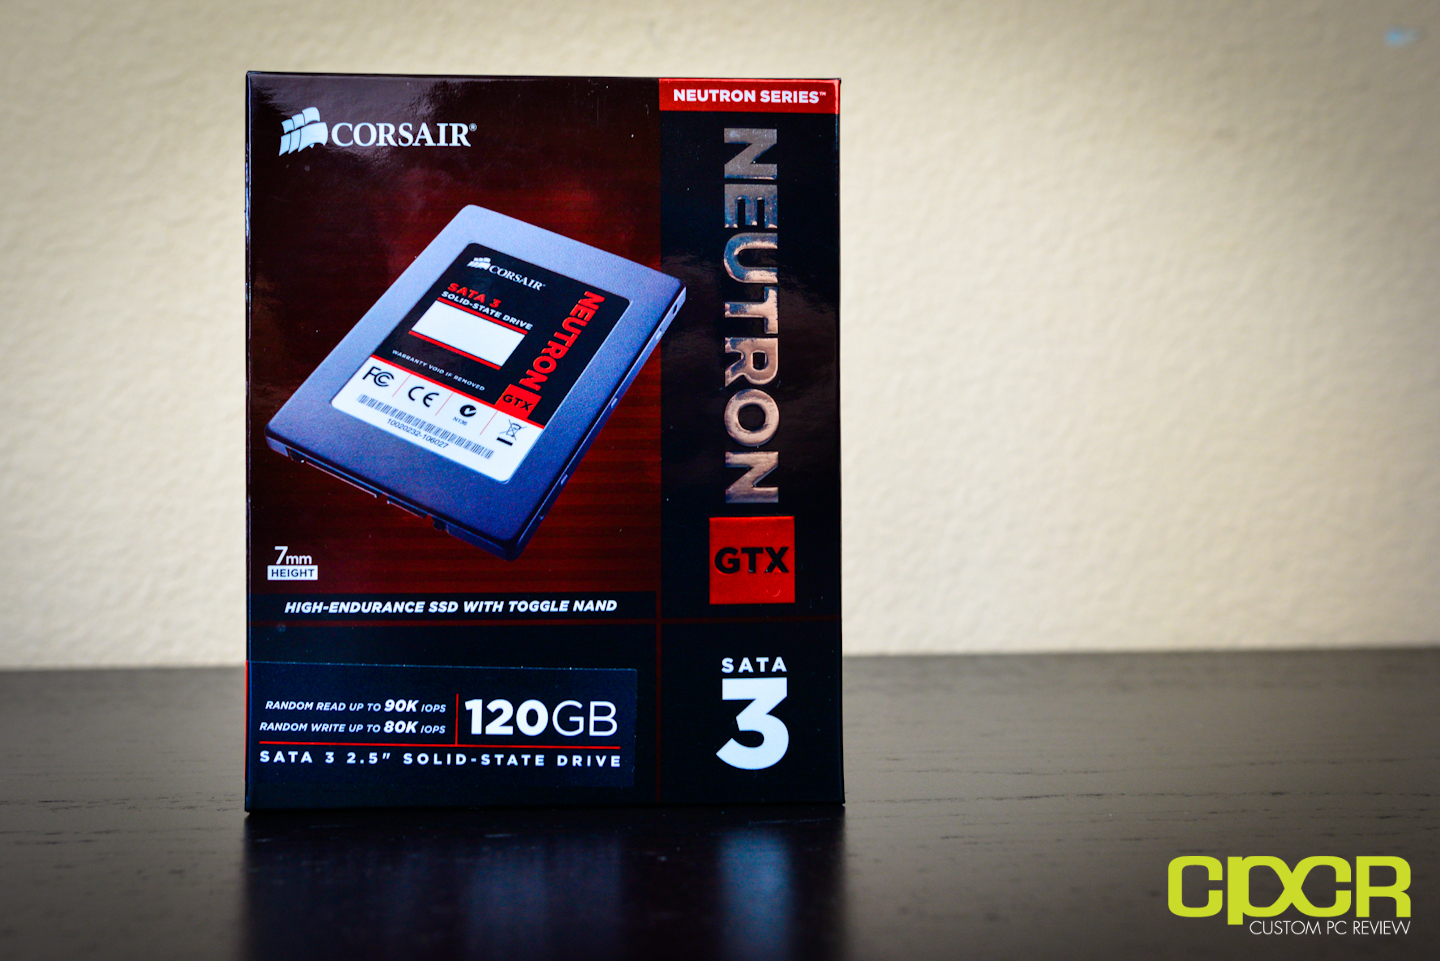 Corsair Neutron GTX 120GB SSD | Custom PC Review